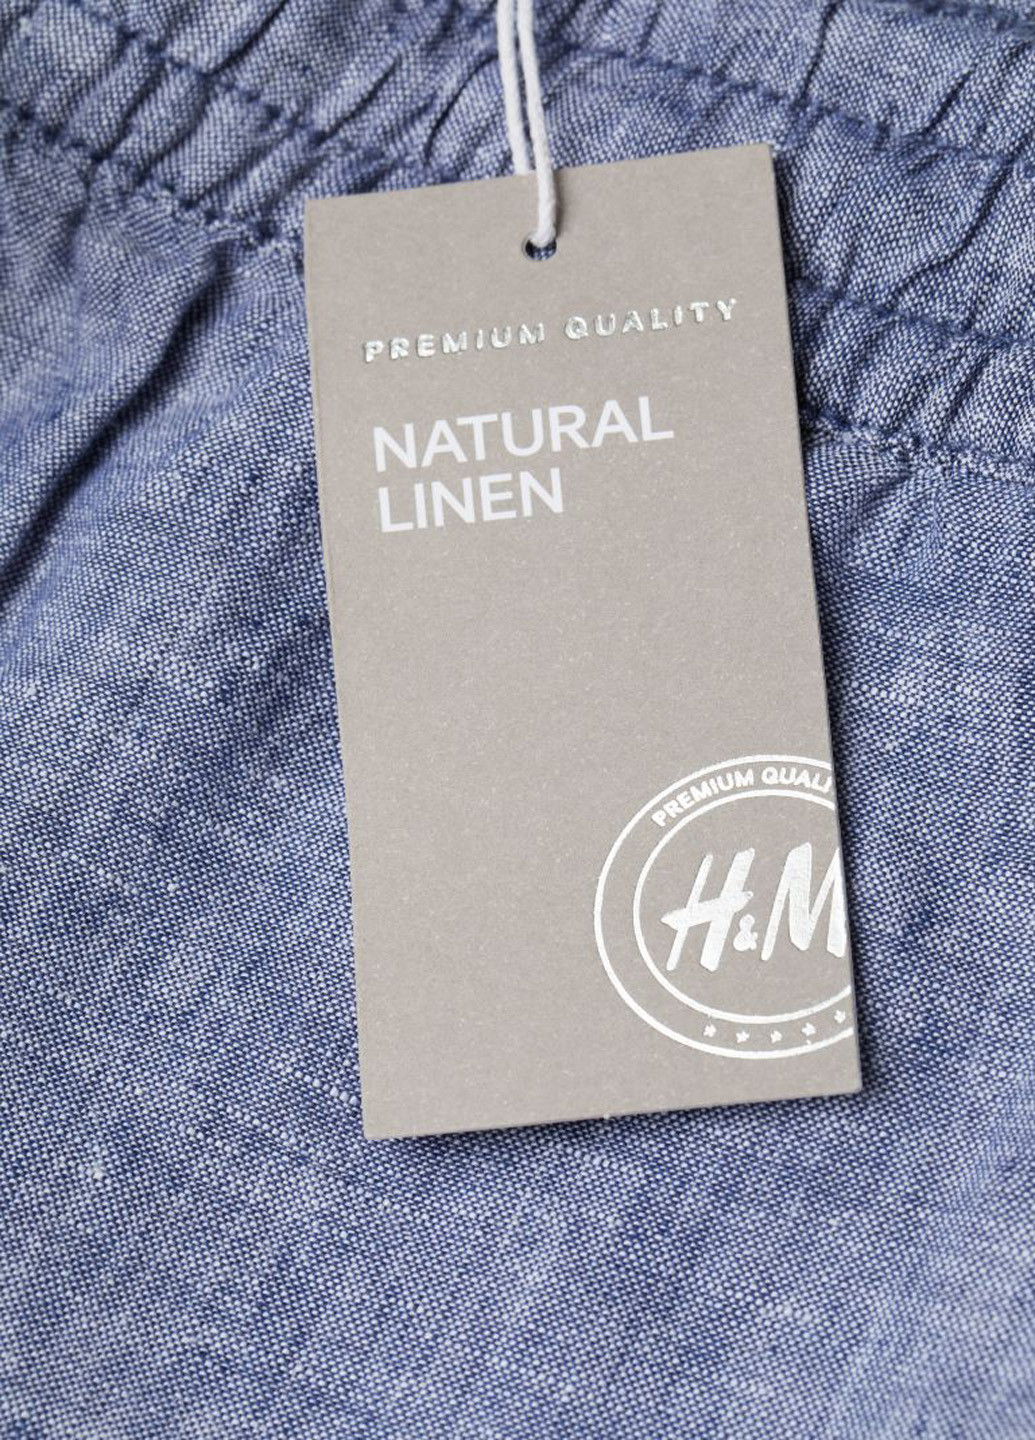 Синие летние брюки H&M